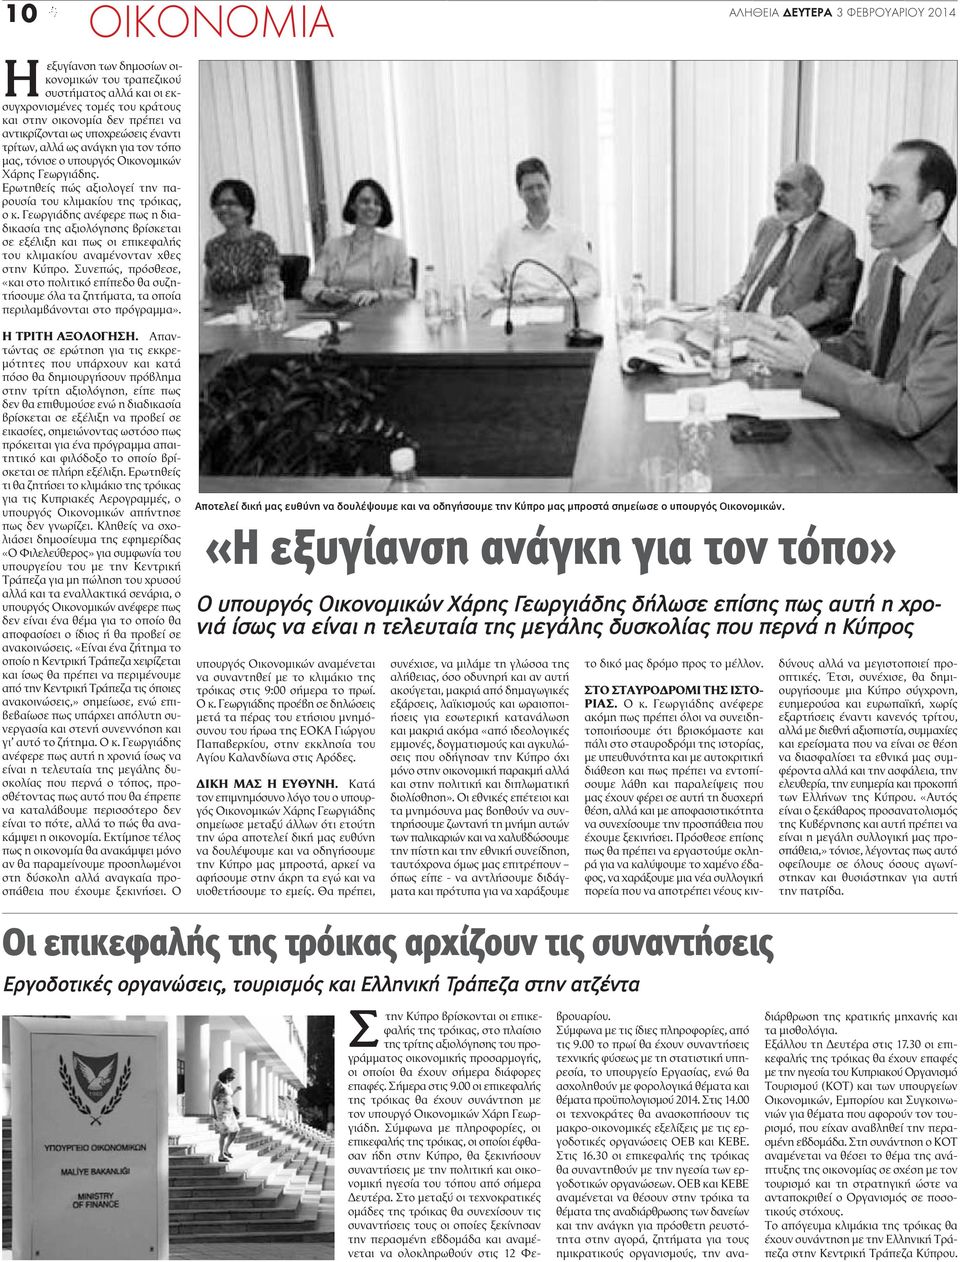 Γεωργιάδης ανέφερε πως η διαδικασία της αξιολόγησης βρίσκεται σε εξέλιξη και πως οι επικεφαλής του κλιμακίου αναμένονταν χθες στην Κύπρο.